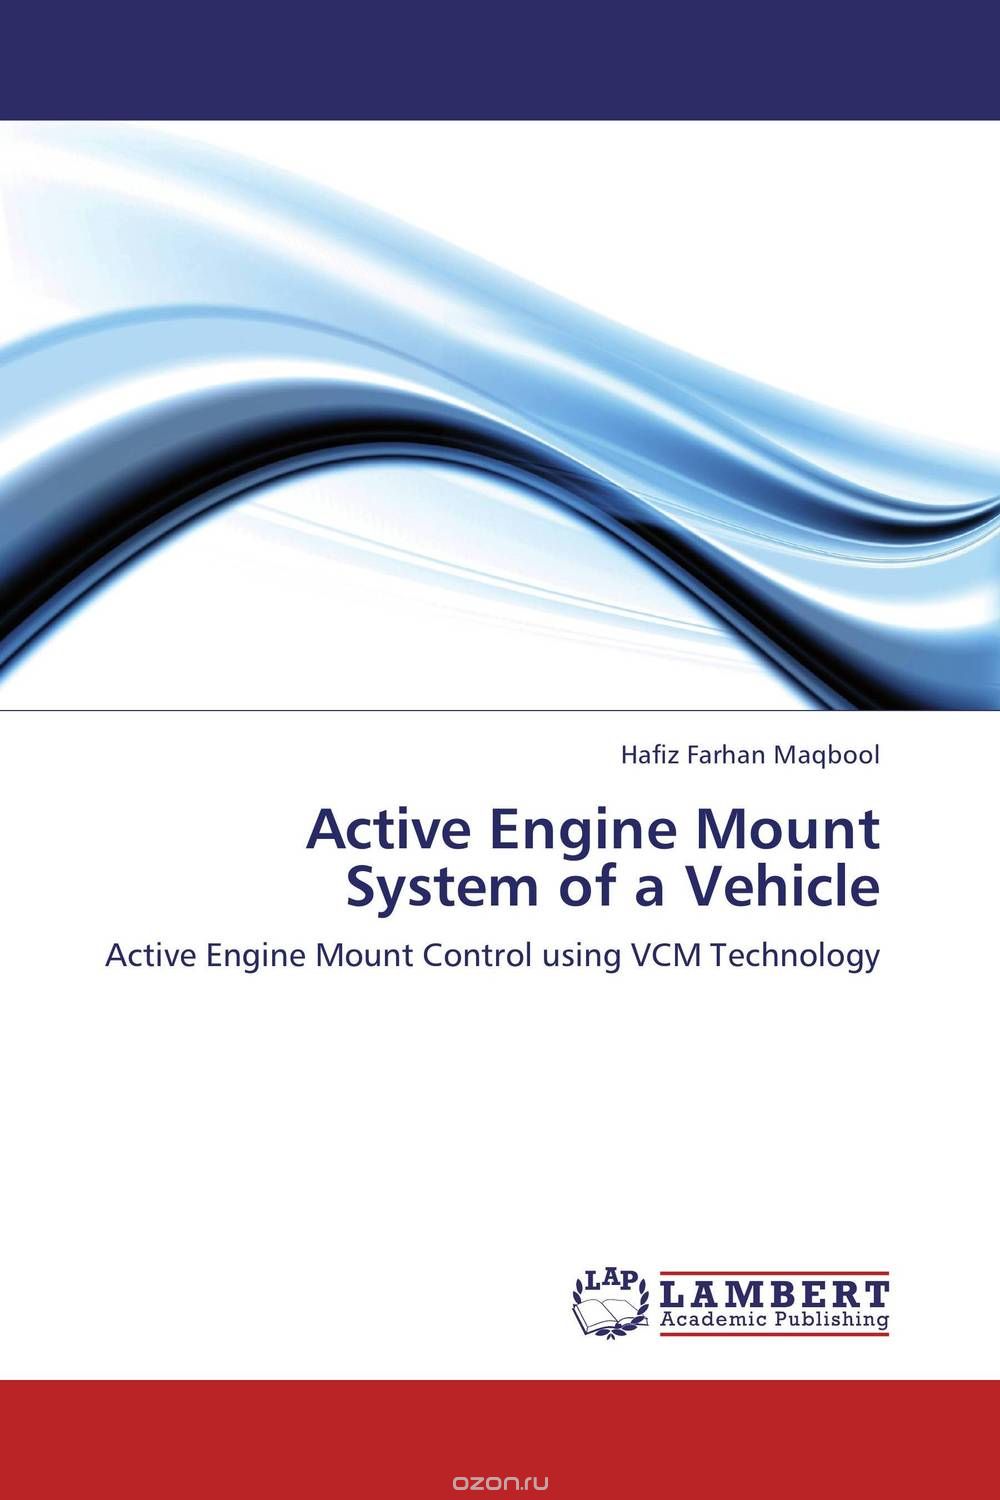 Скачать книгу "Active Engine Mount System of a Vehicle"